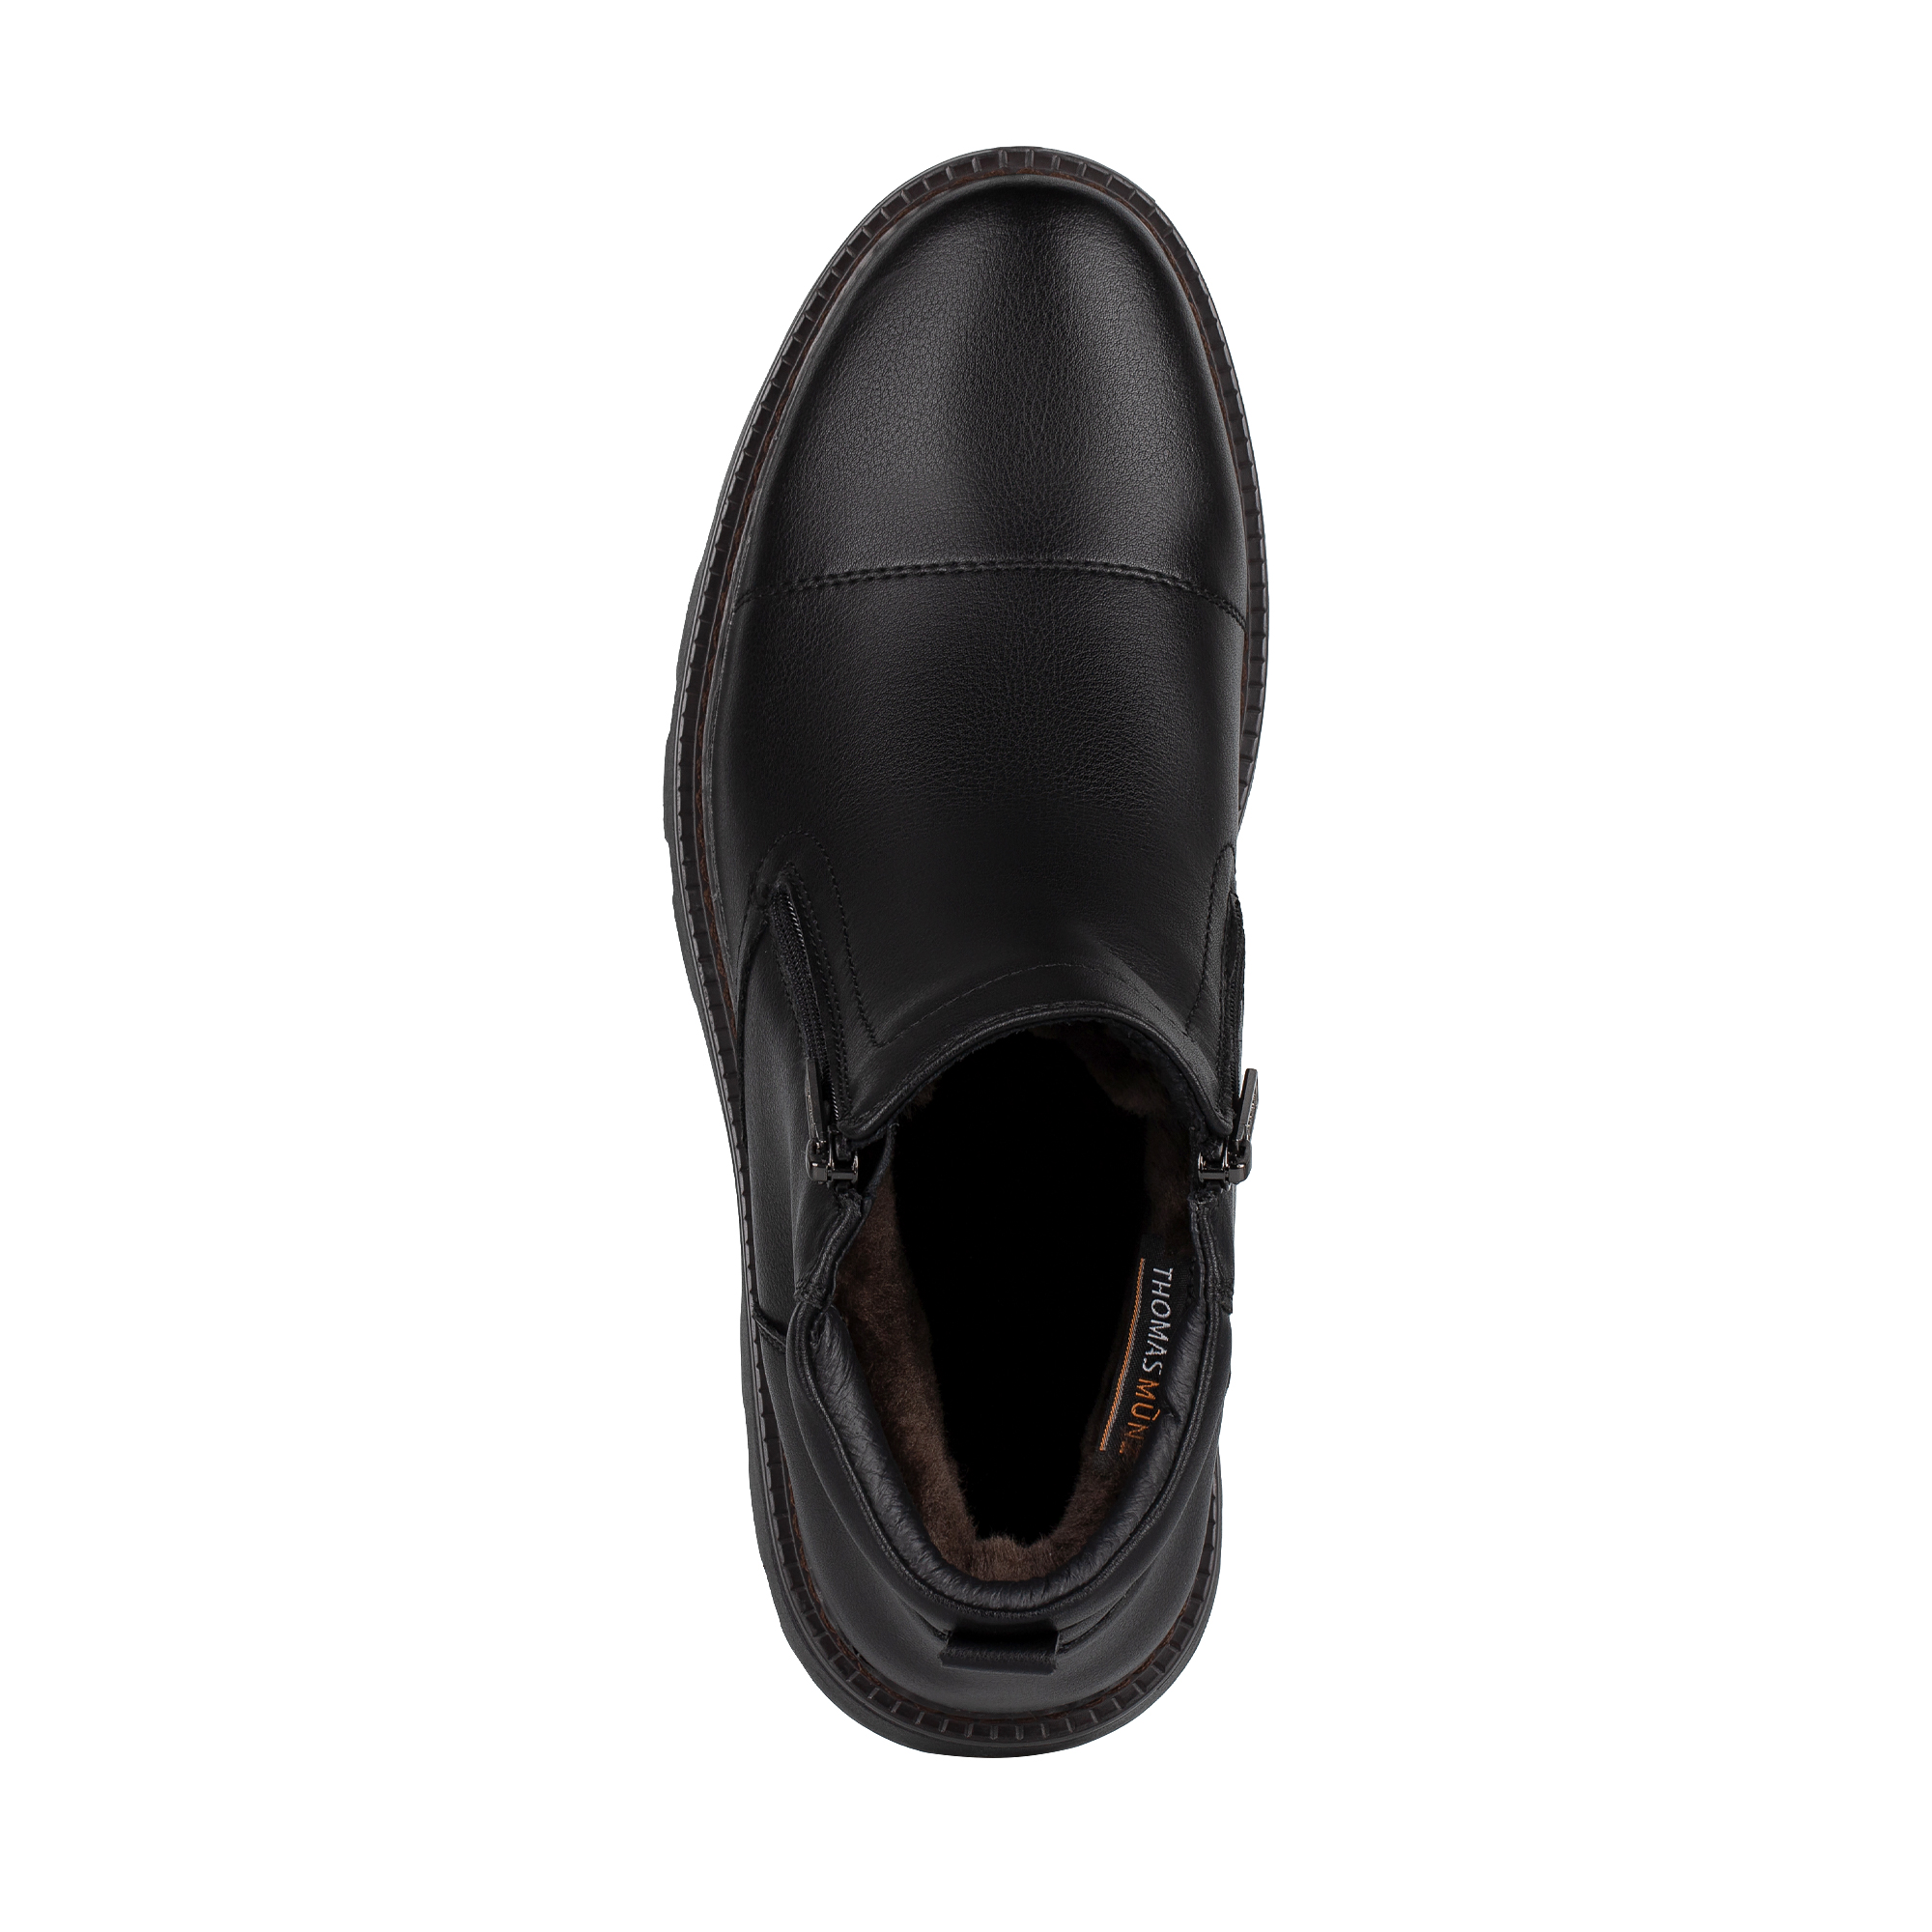 Ботинки Thomas Munz 116-3453A-3602, цвет черный, размер 41 - фото 5